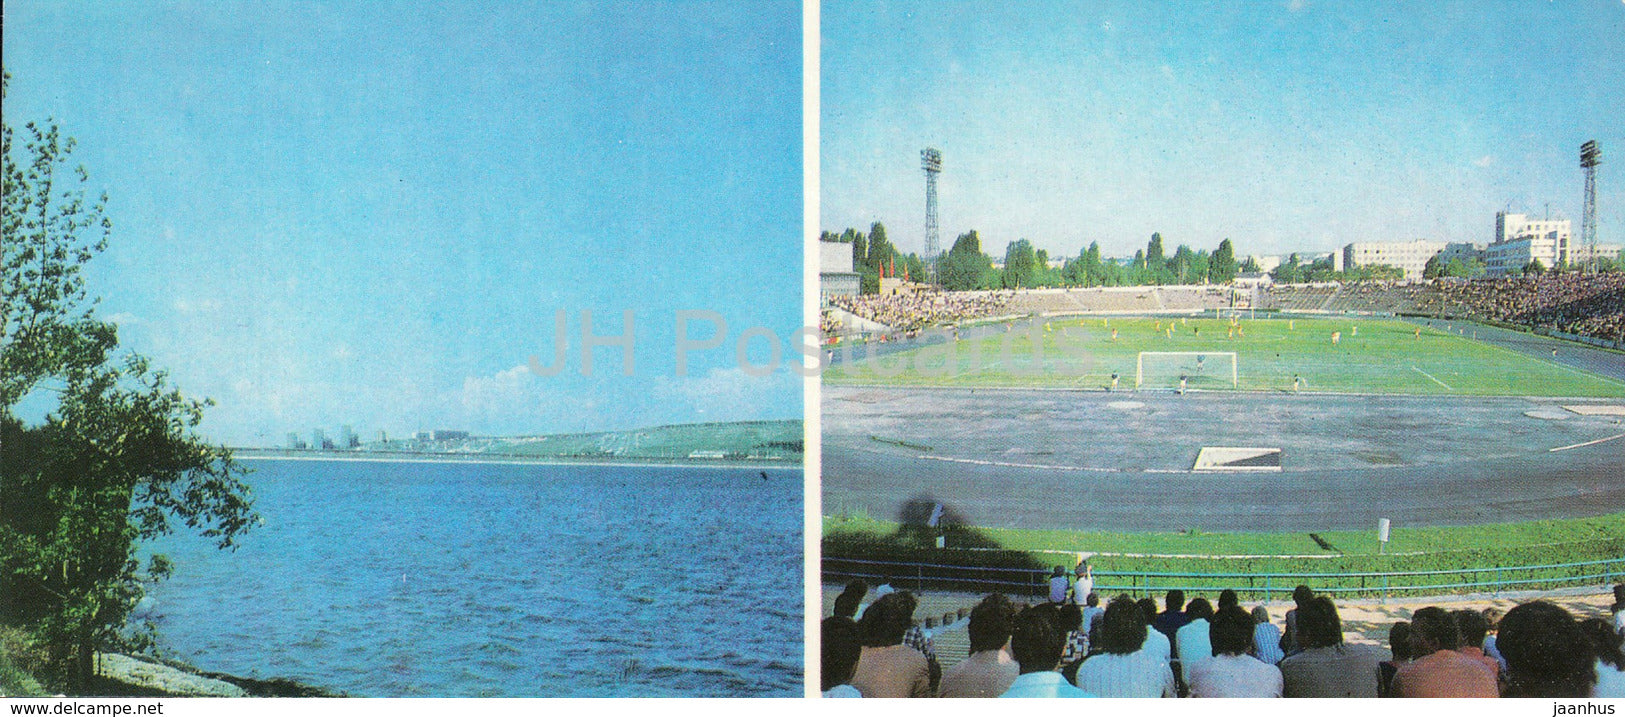 Simferopol - City reservoir - Lokomotiv satdium - 1983 - Ukraine USSR - unused - JH Postcards